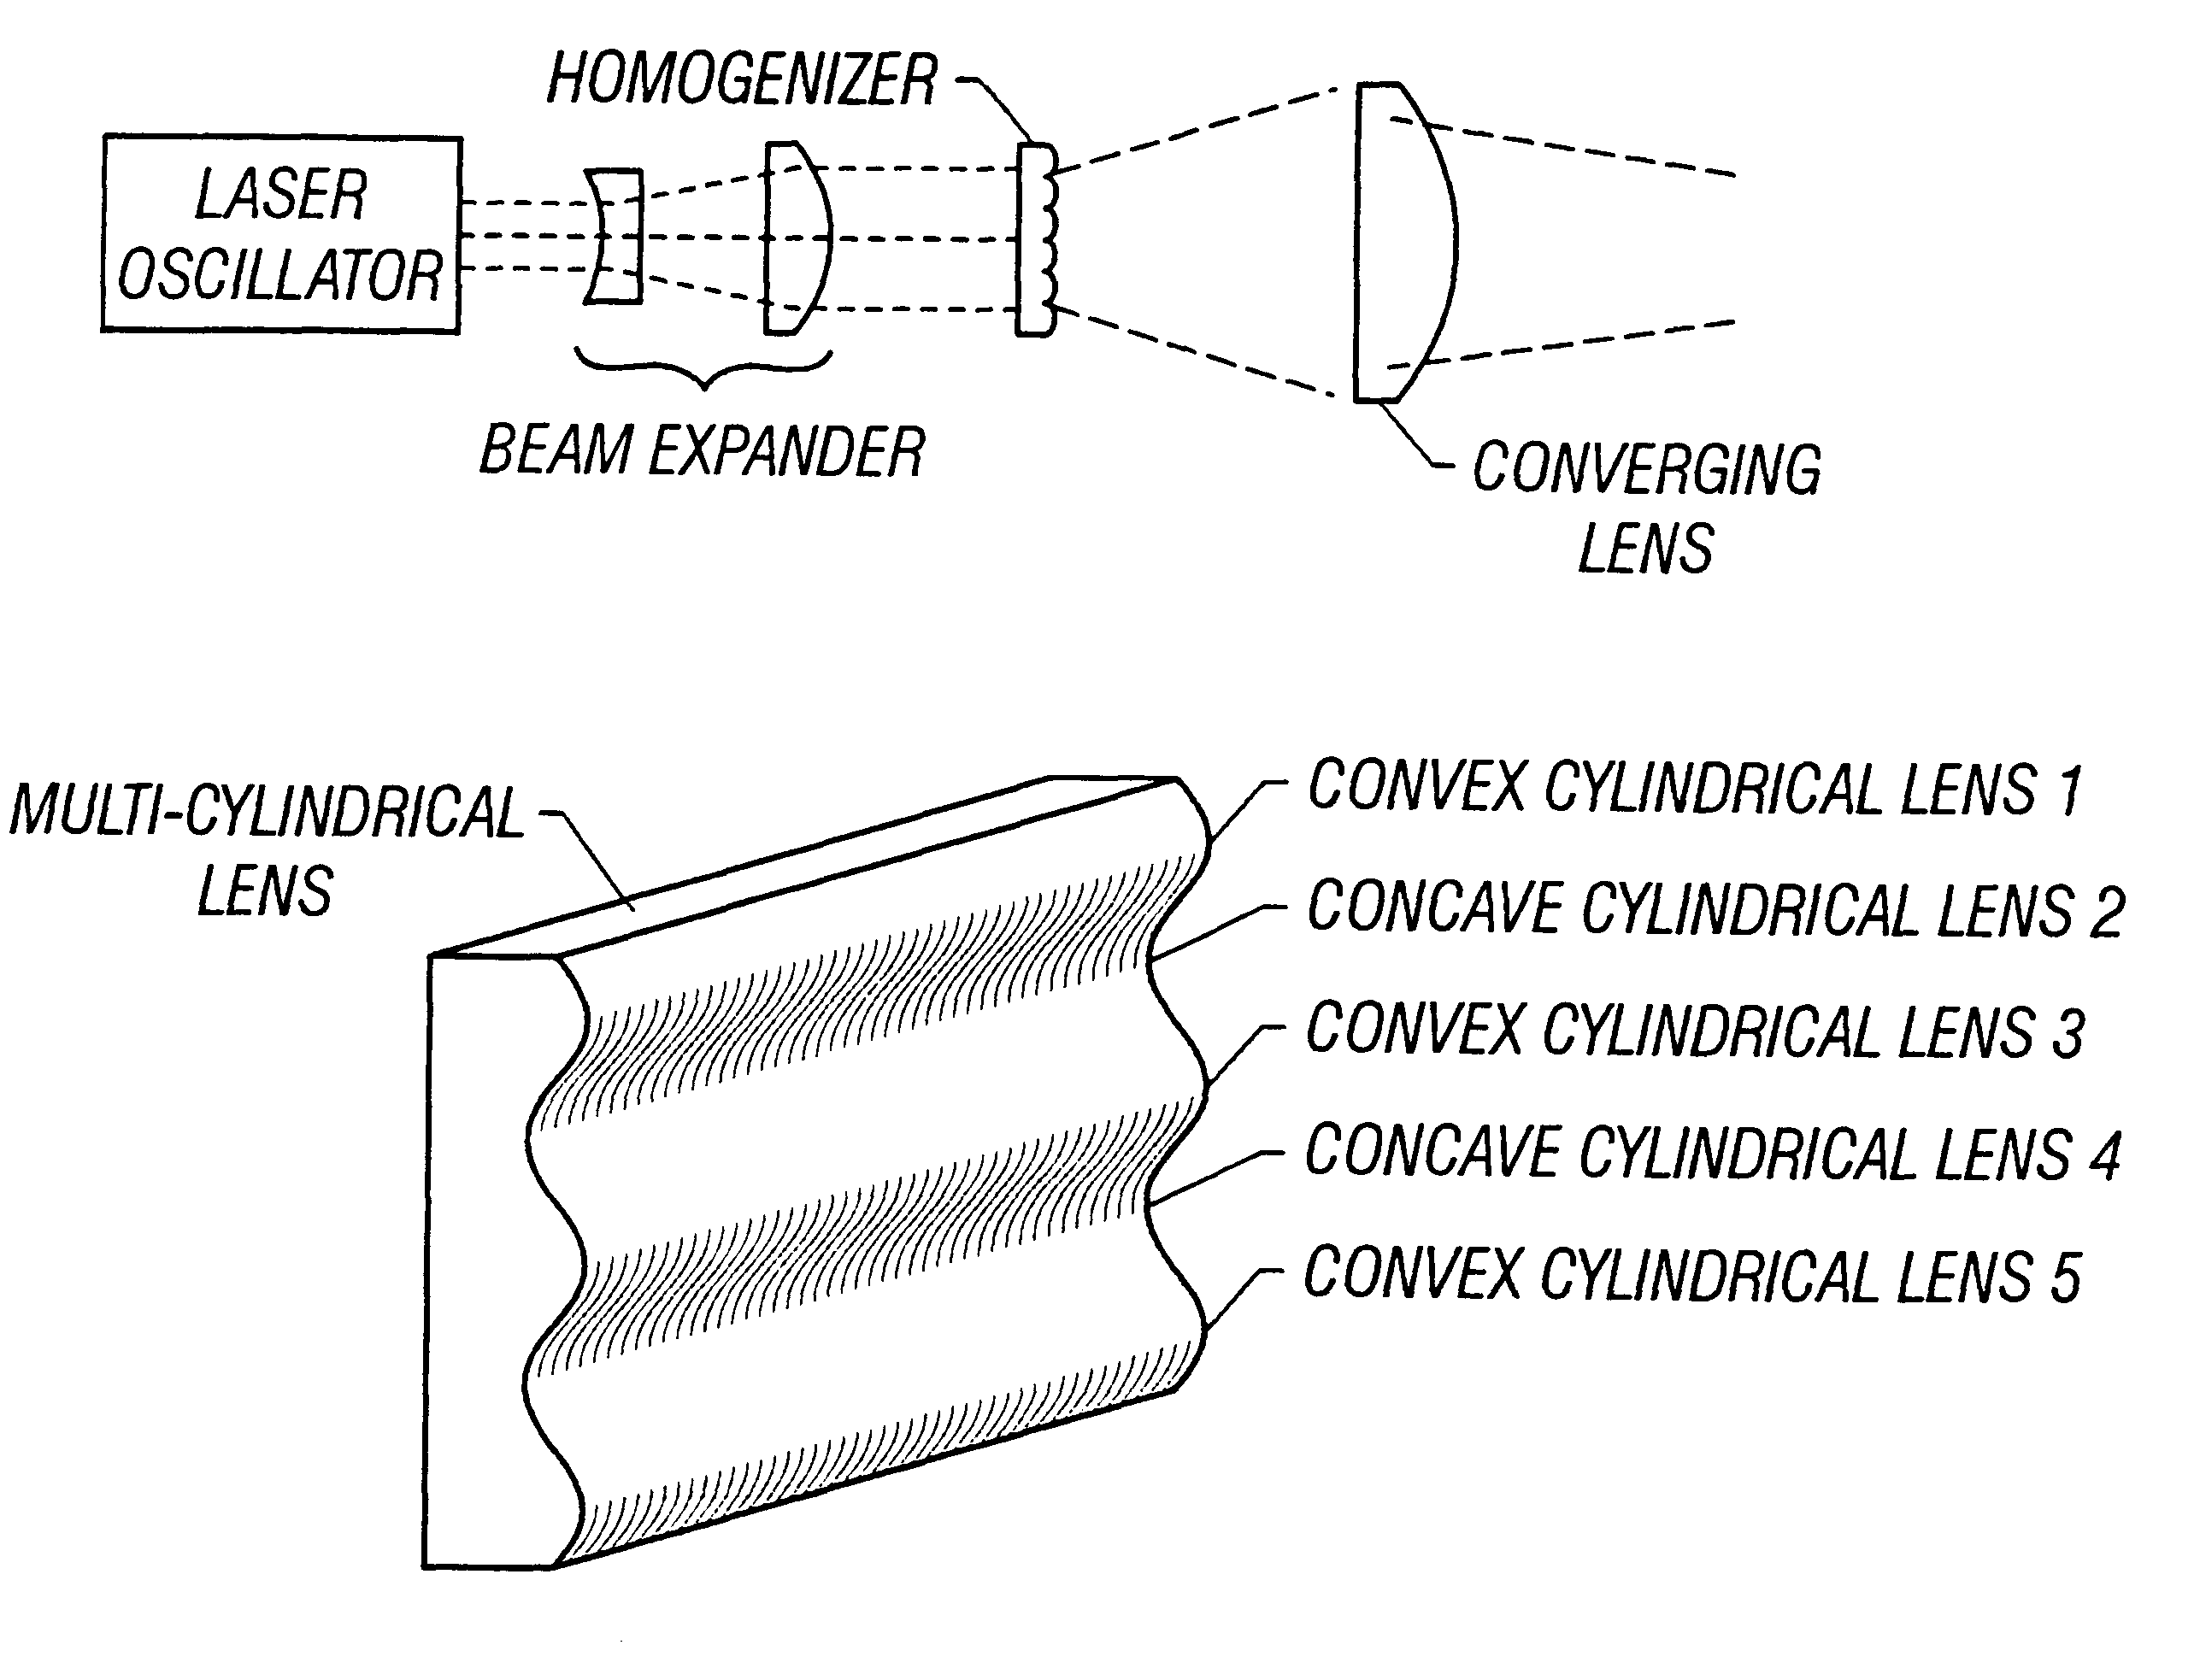 Laser optical apparatus